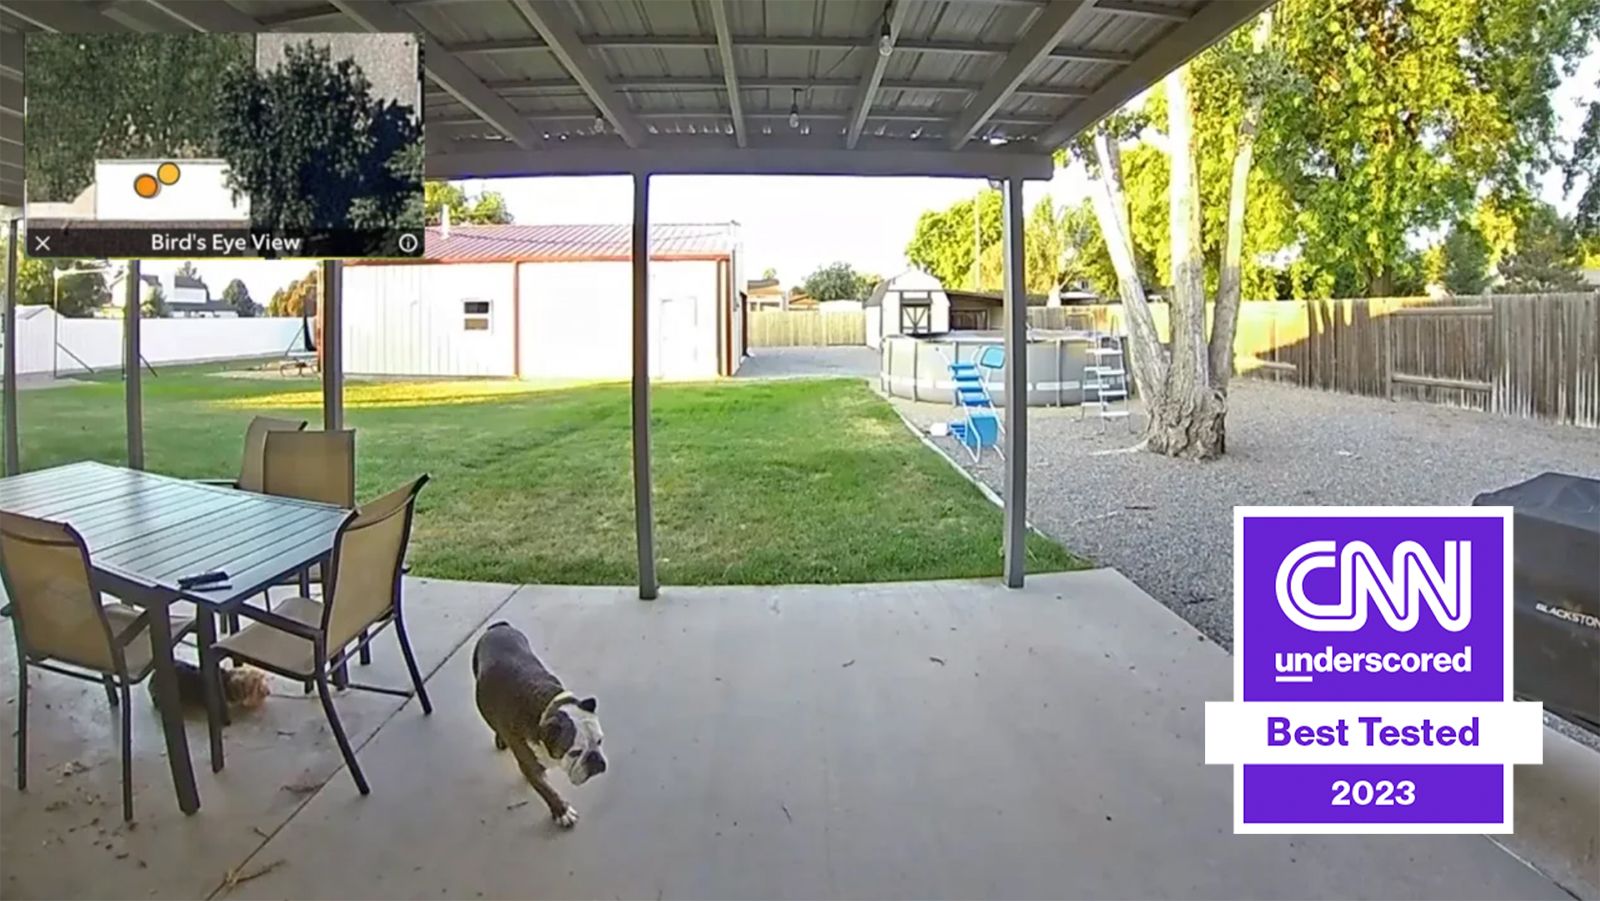 Ring doorbell camera captures unexpected act of heroism